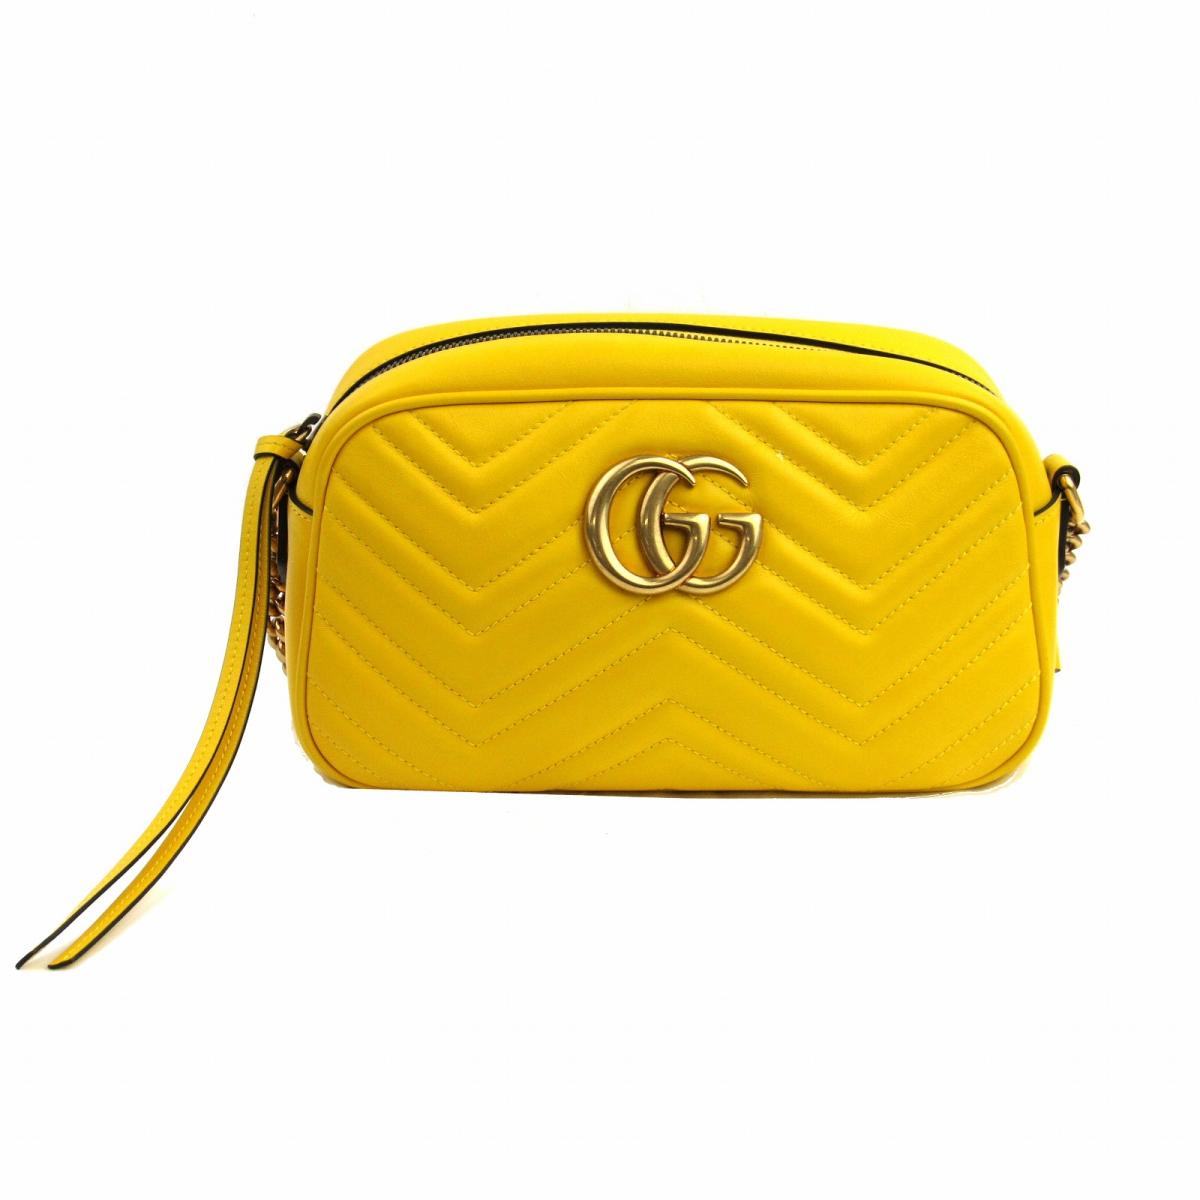 gucci yellow purse